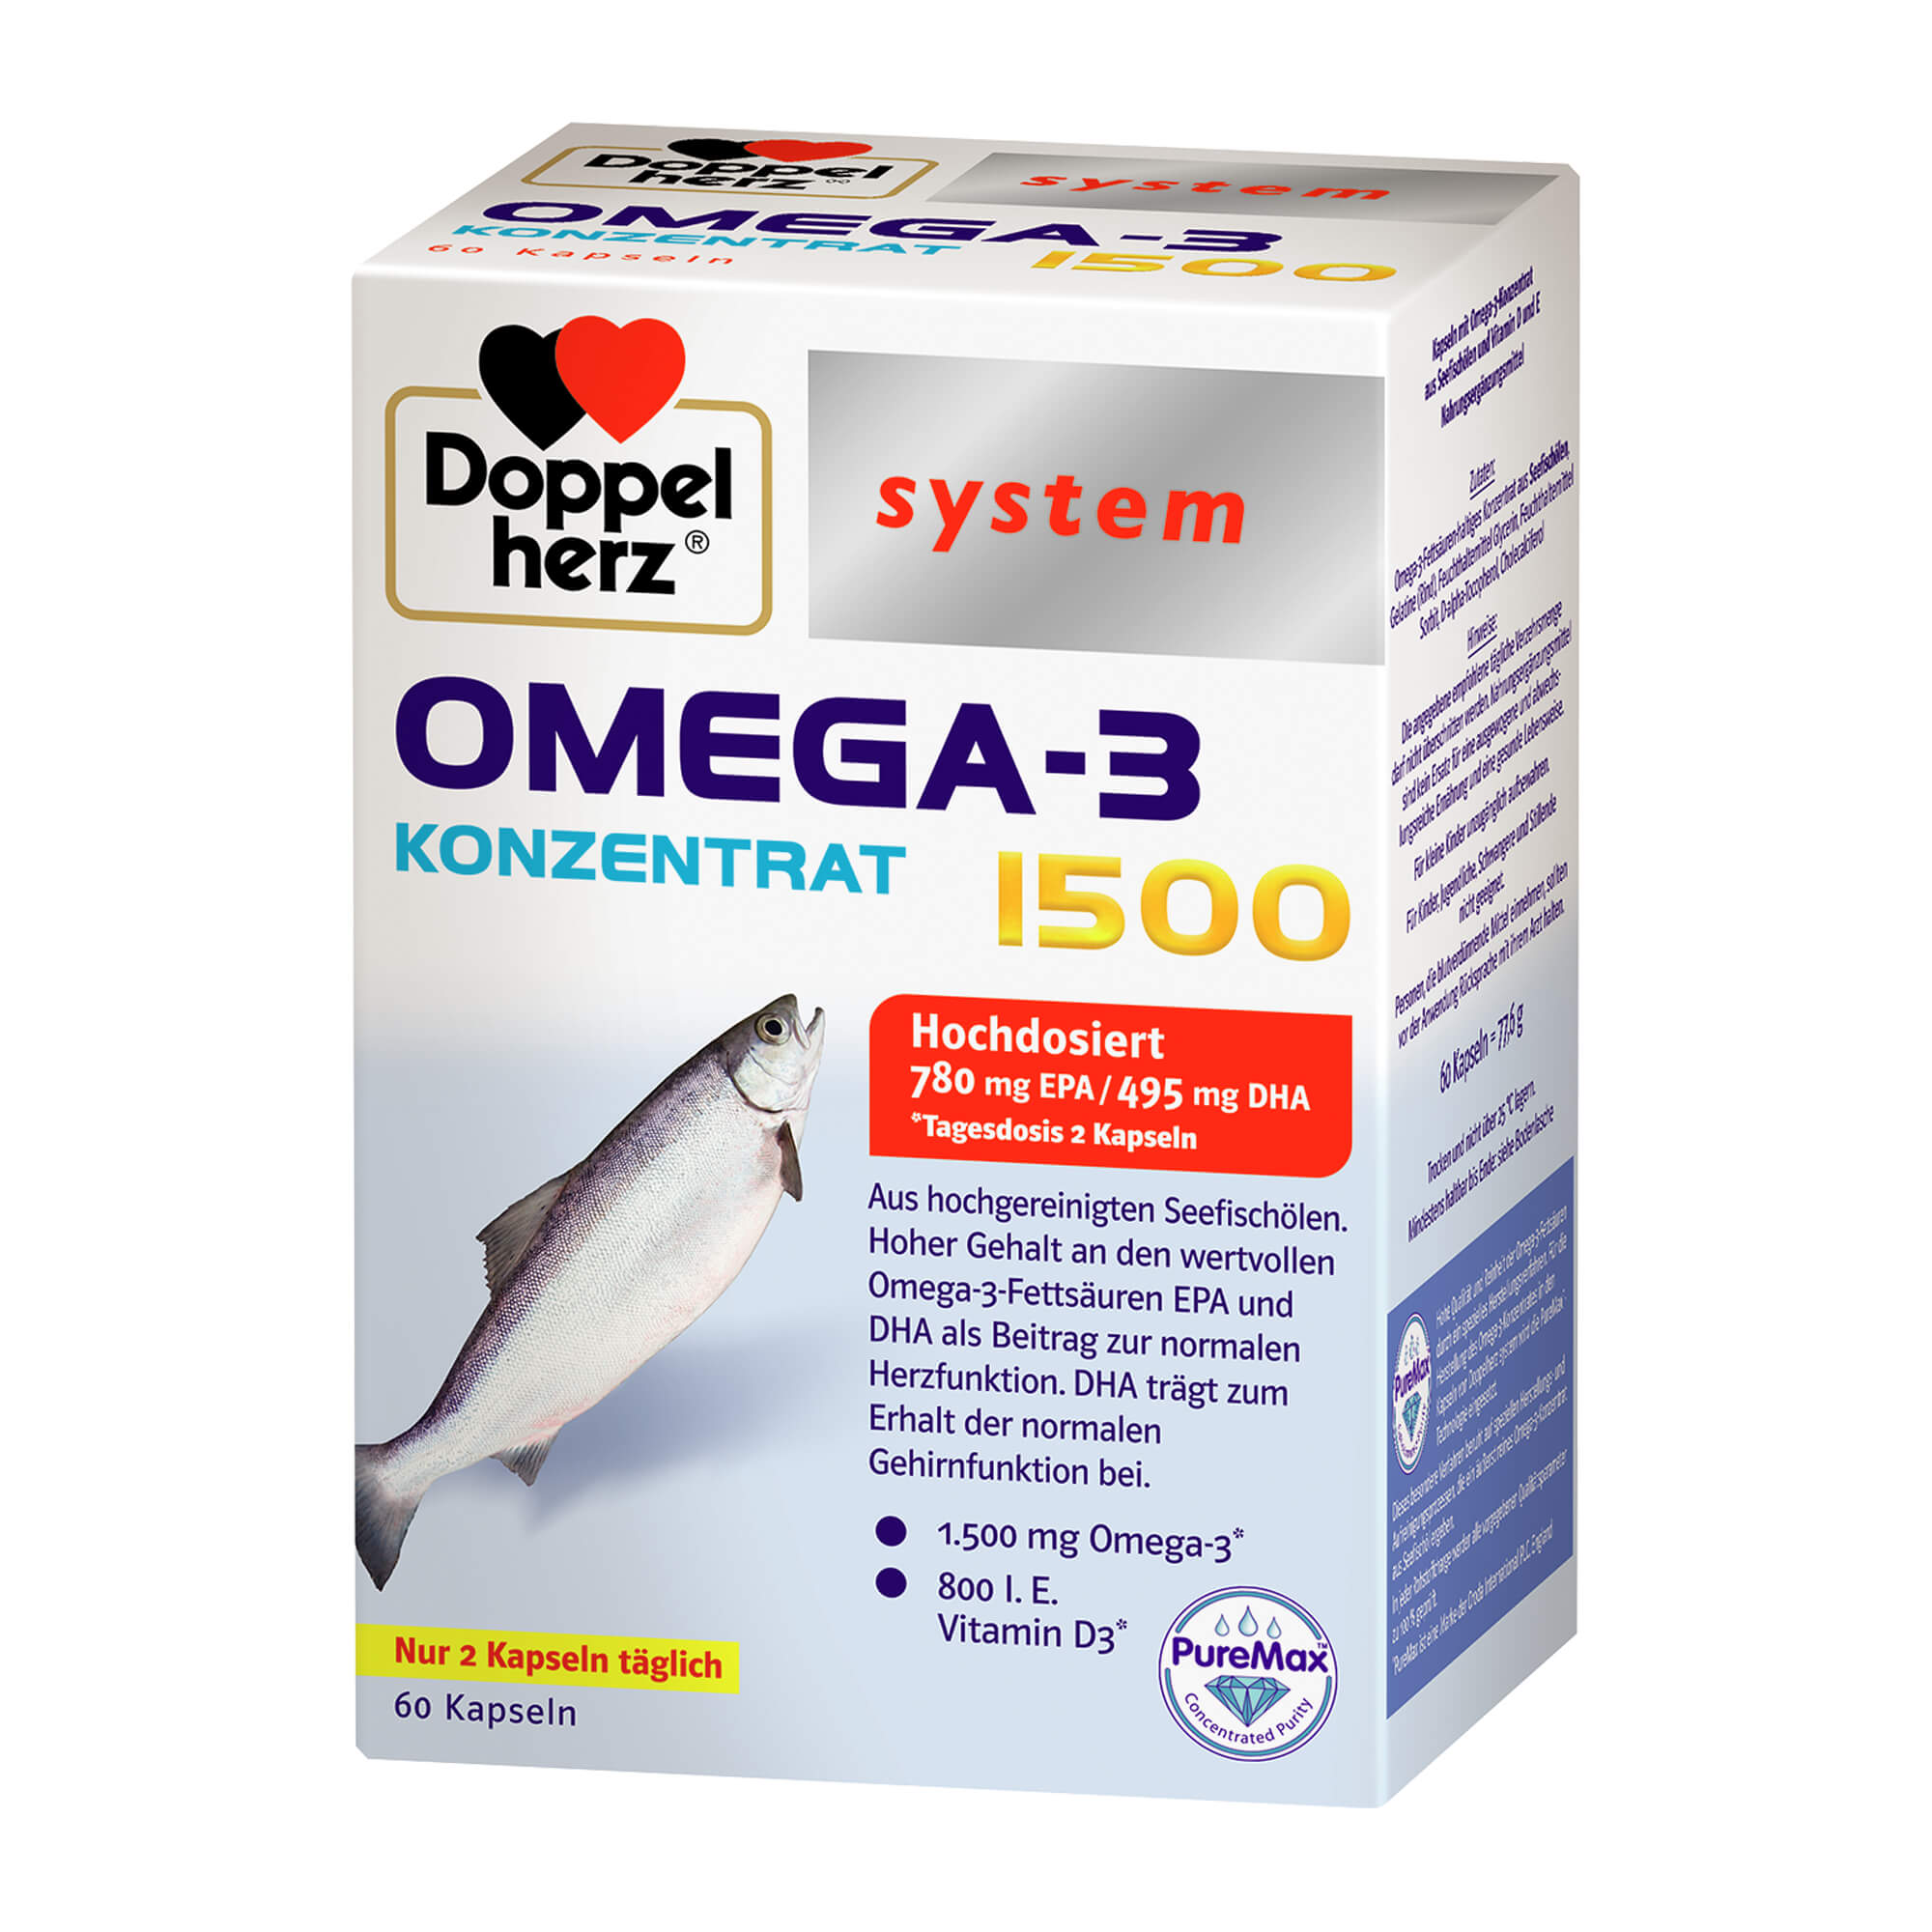 Nahrungsergänzungsmittel mit Omega-3 Konzentrat aus Seefischölen und Vitamin D und E.